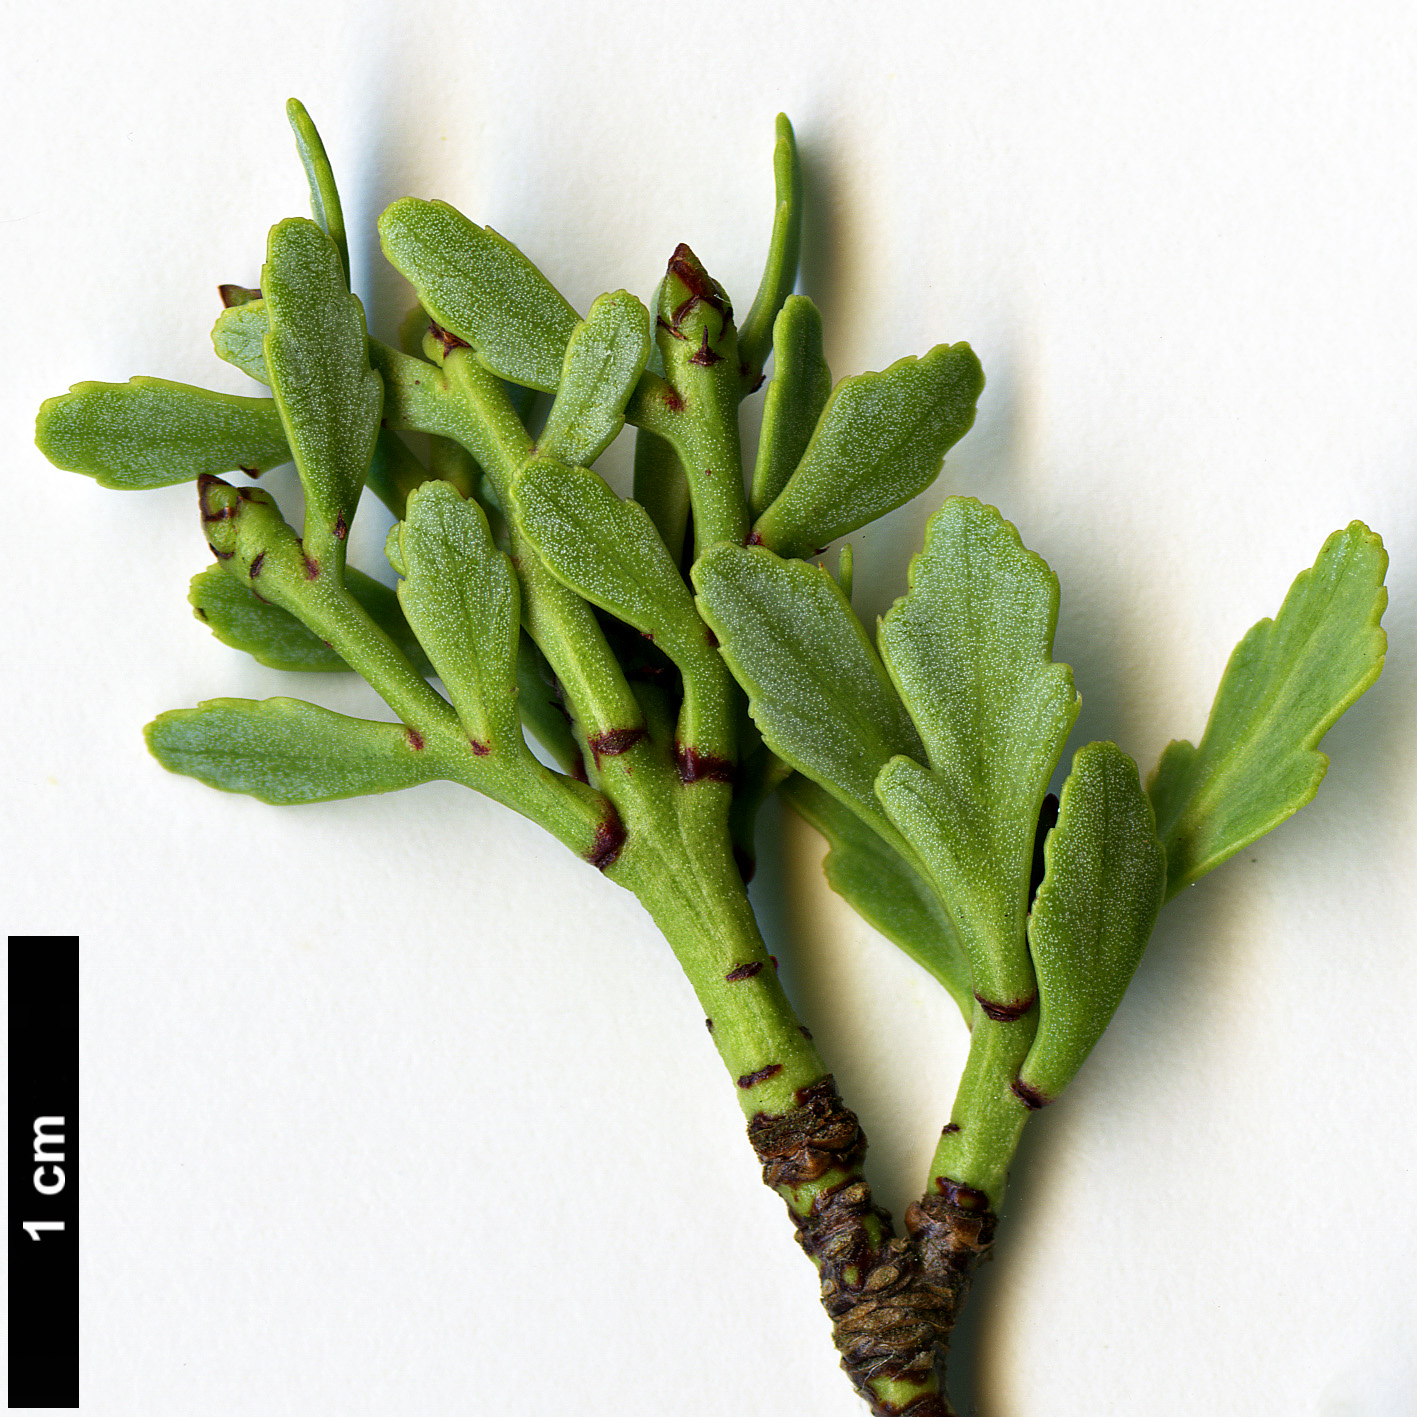 High resolution image: Family: Podocarpaceae - Genus: Phyllocladus - Taxon: trichomanoides - SpeciesSub: var. alpinus